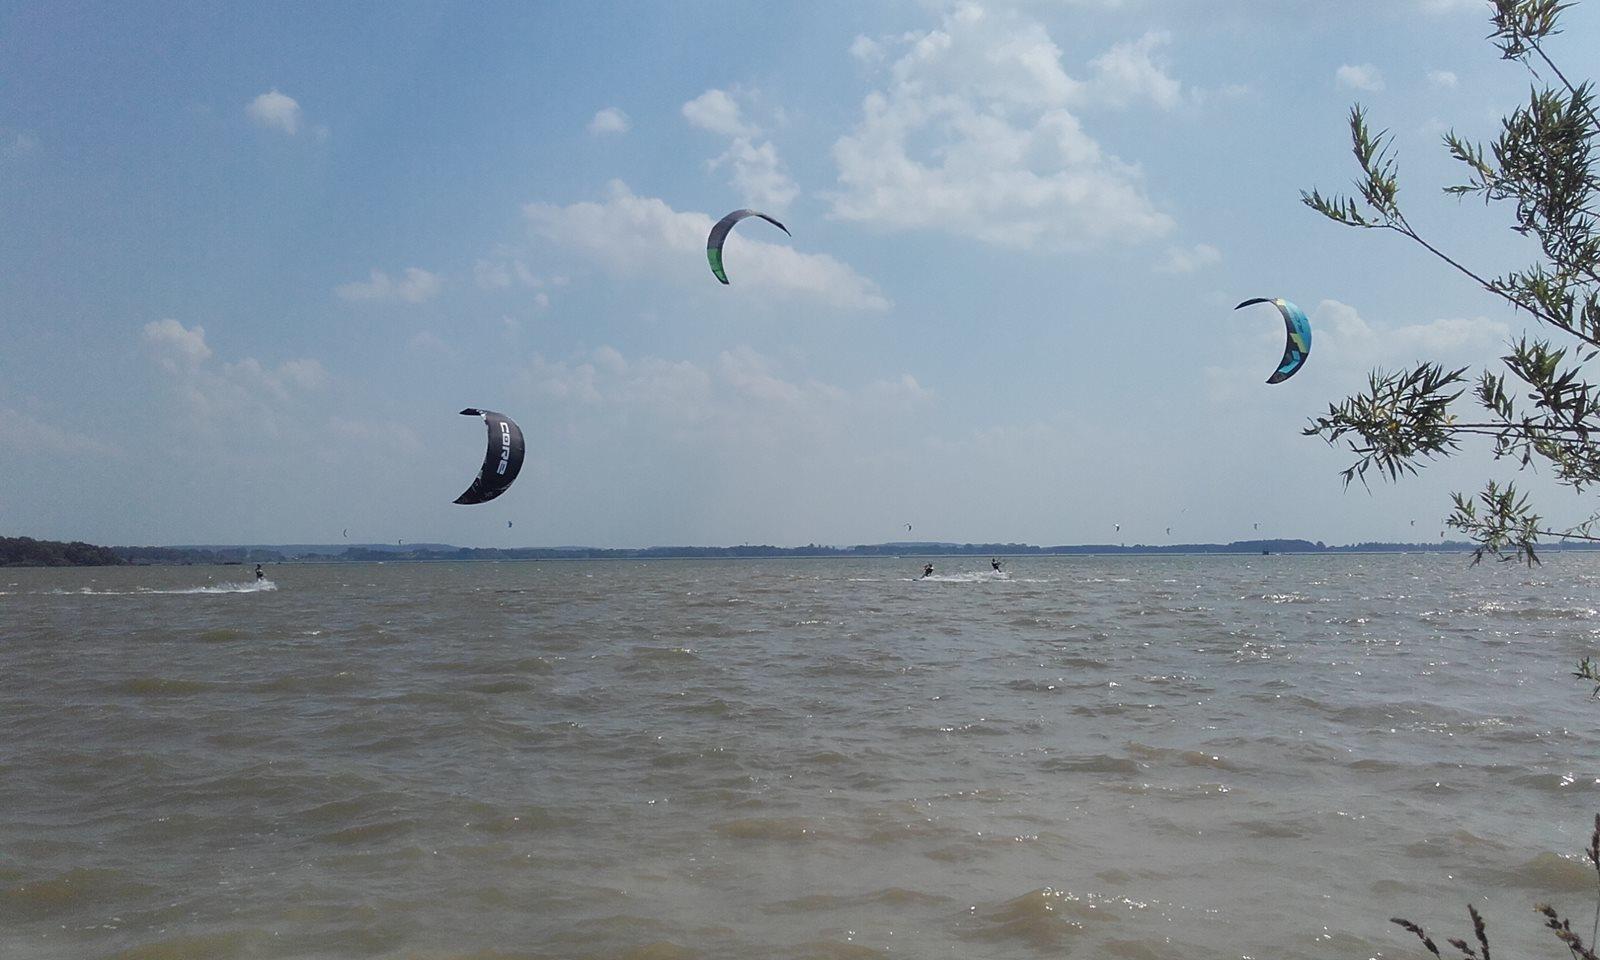 Kitesurfing-Karibska-kajtova-Rozkos-3.jpg